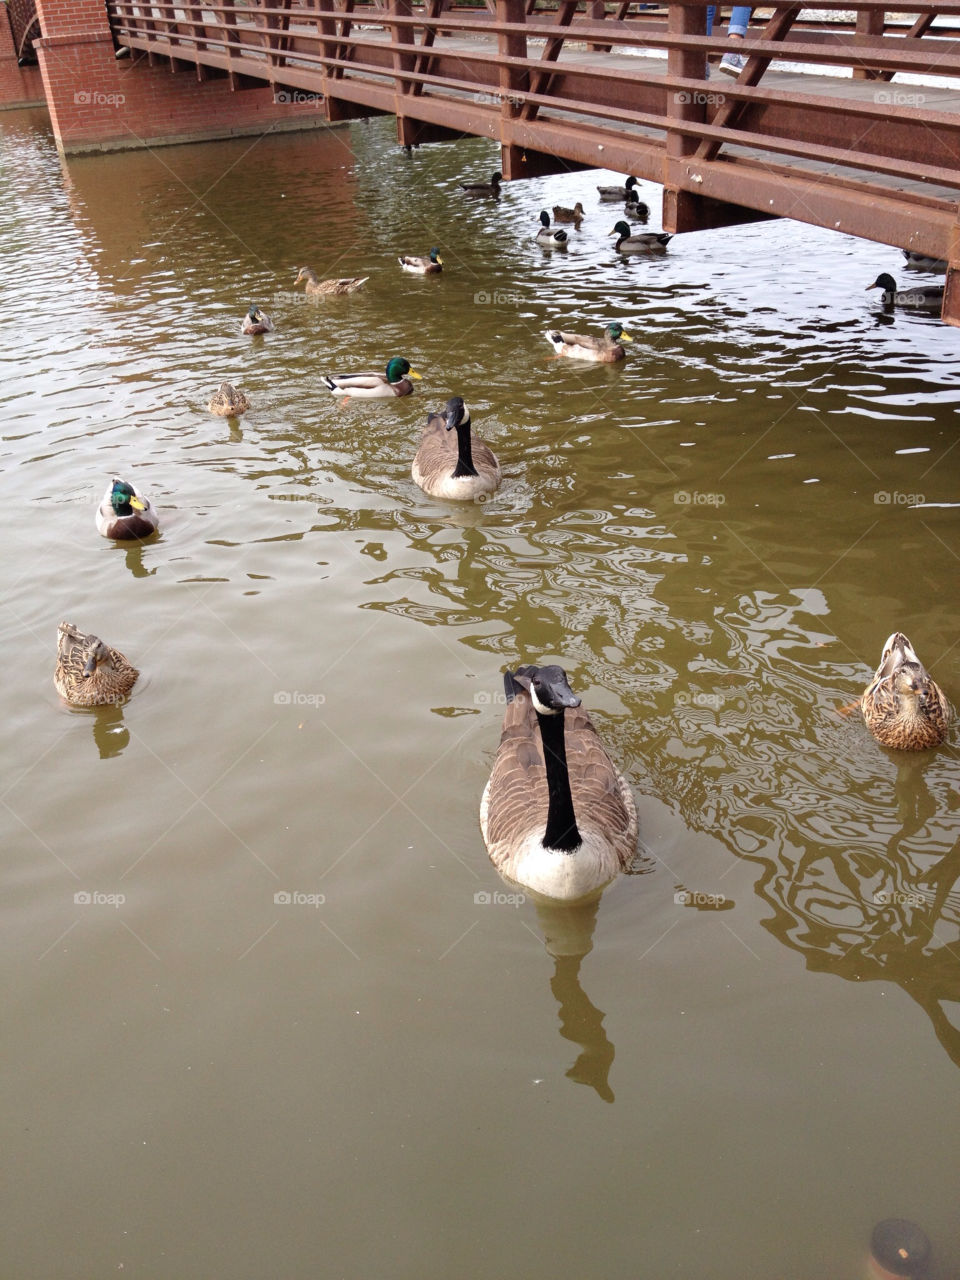 the of lake ducks by hooksy7